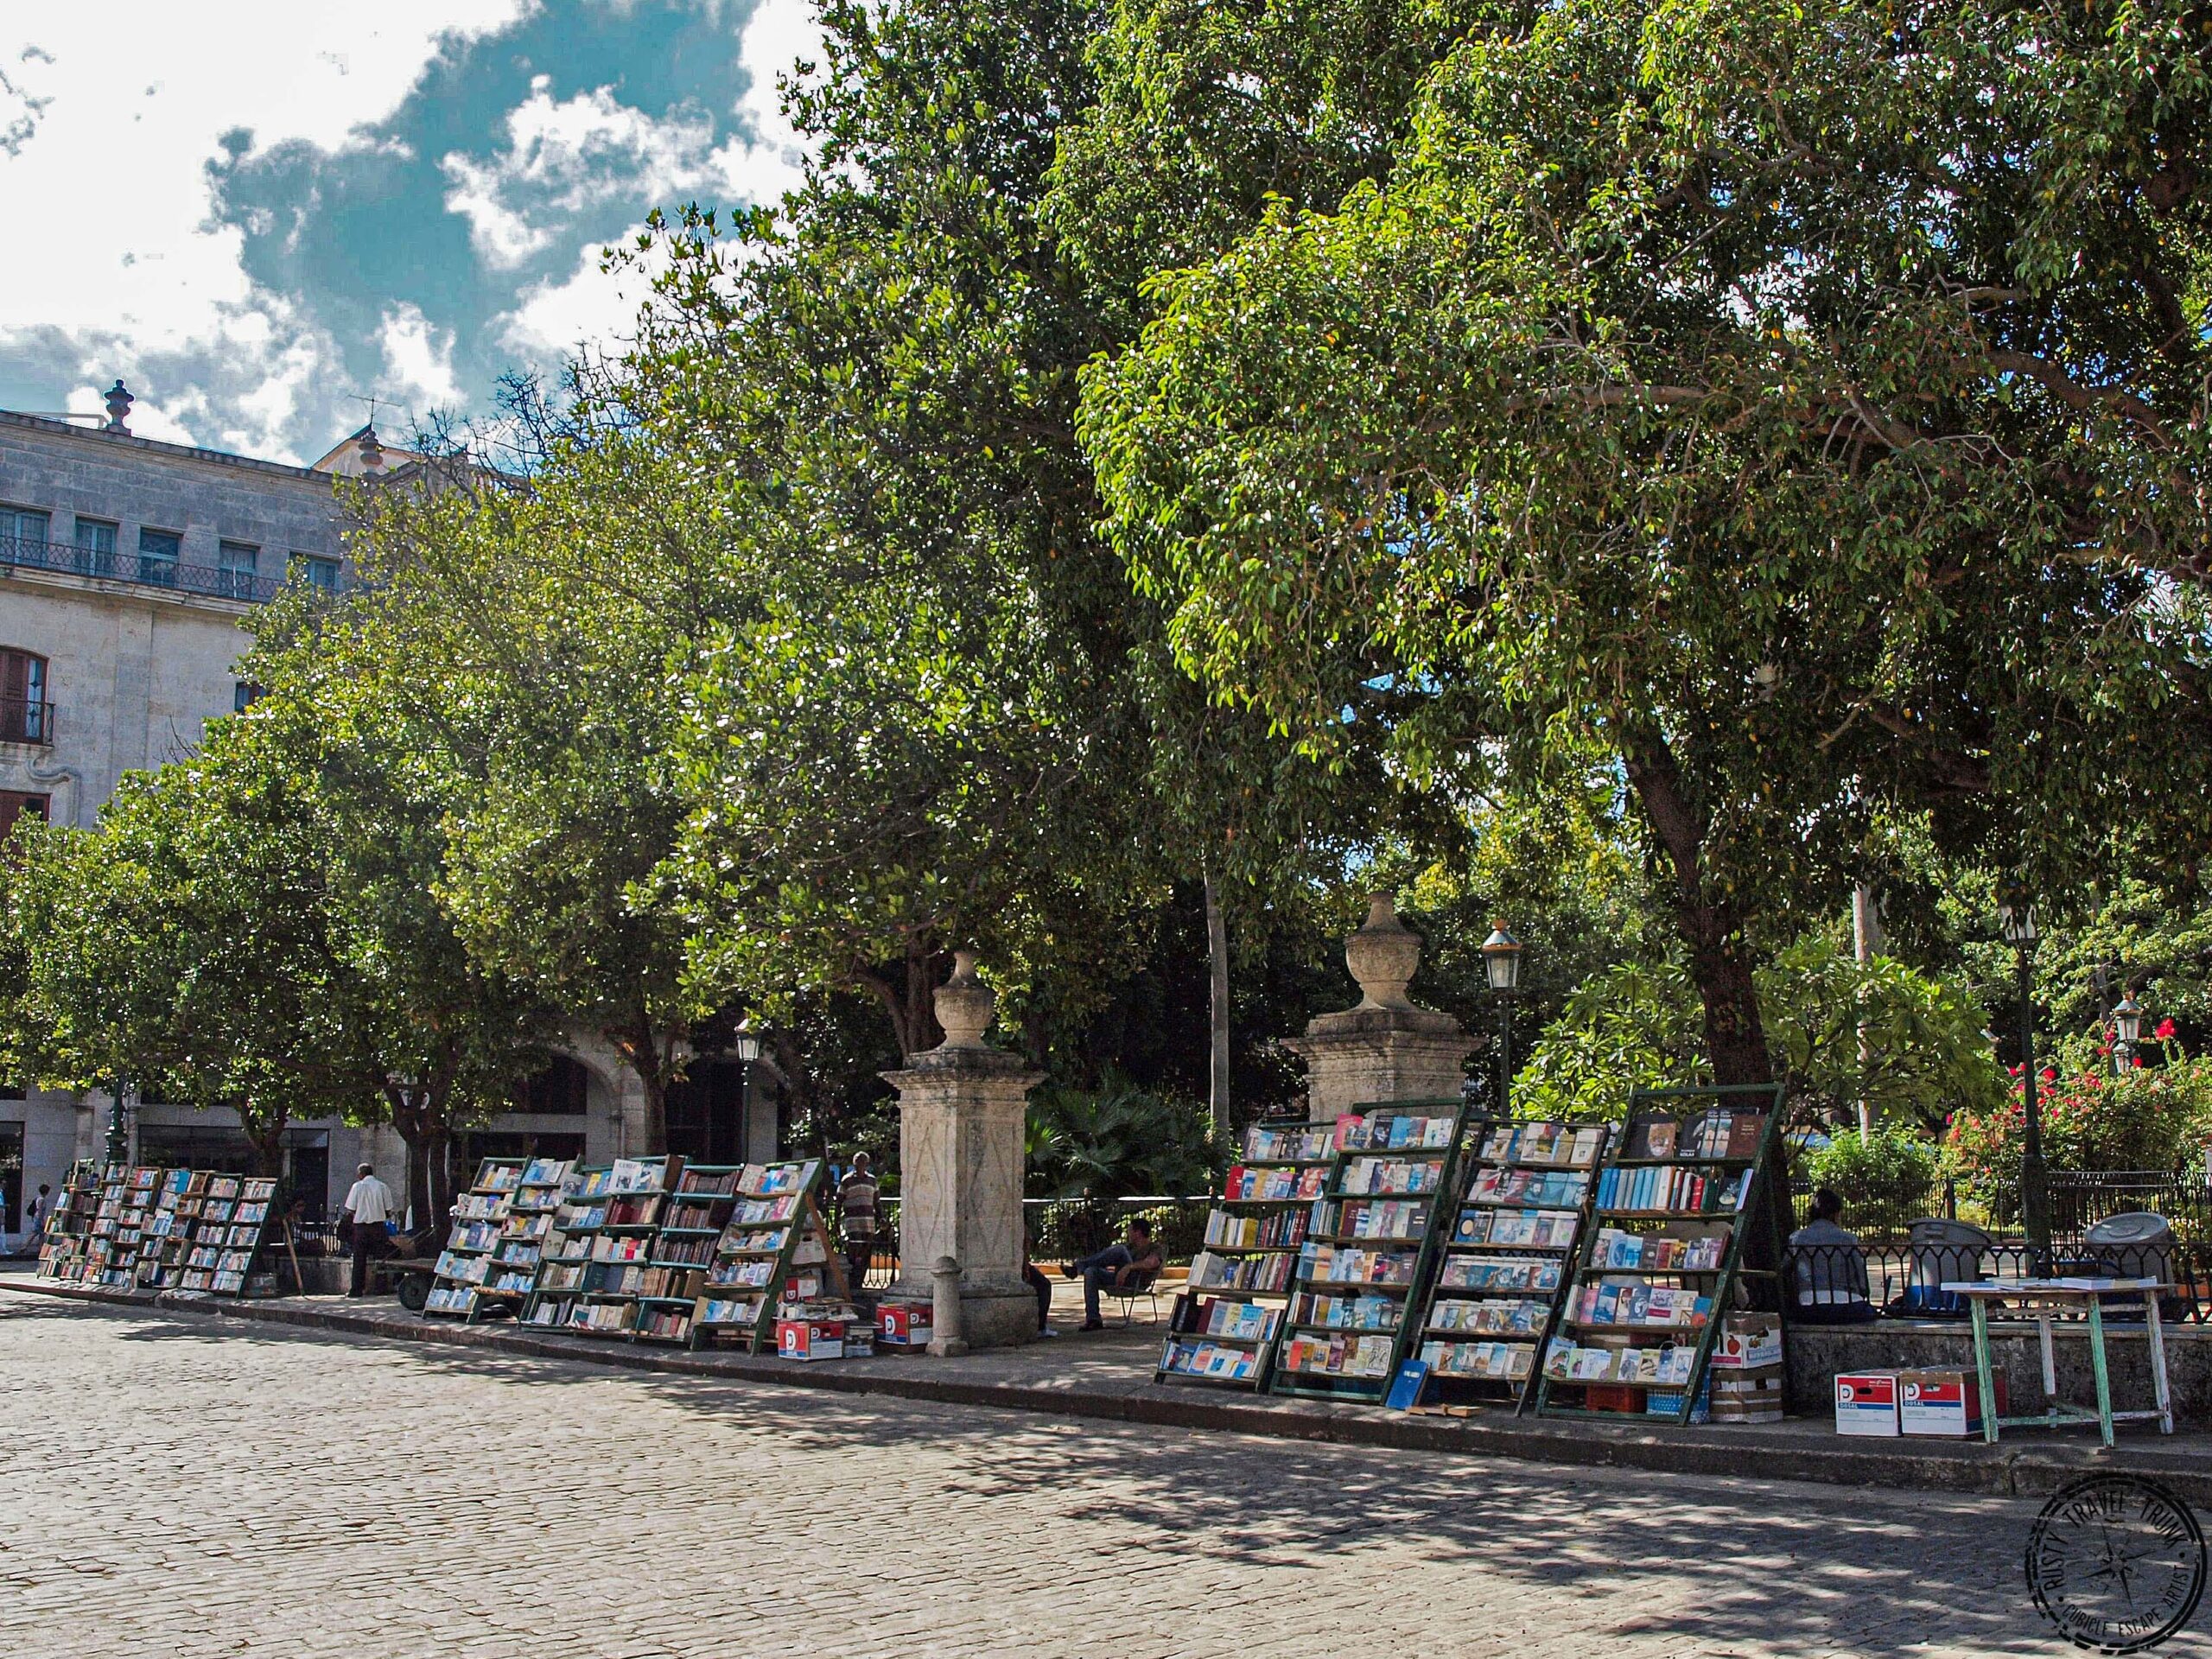 Havana Book Market